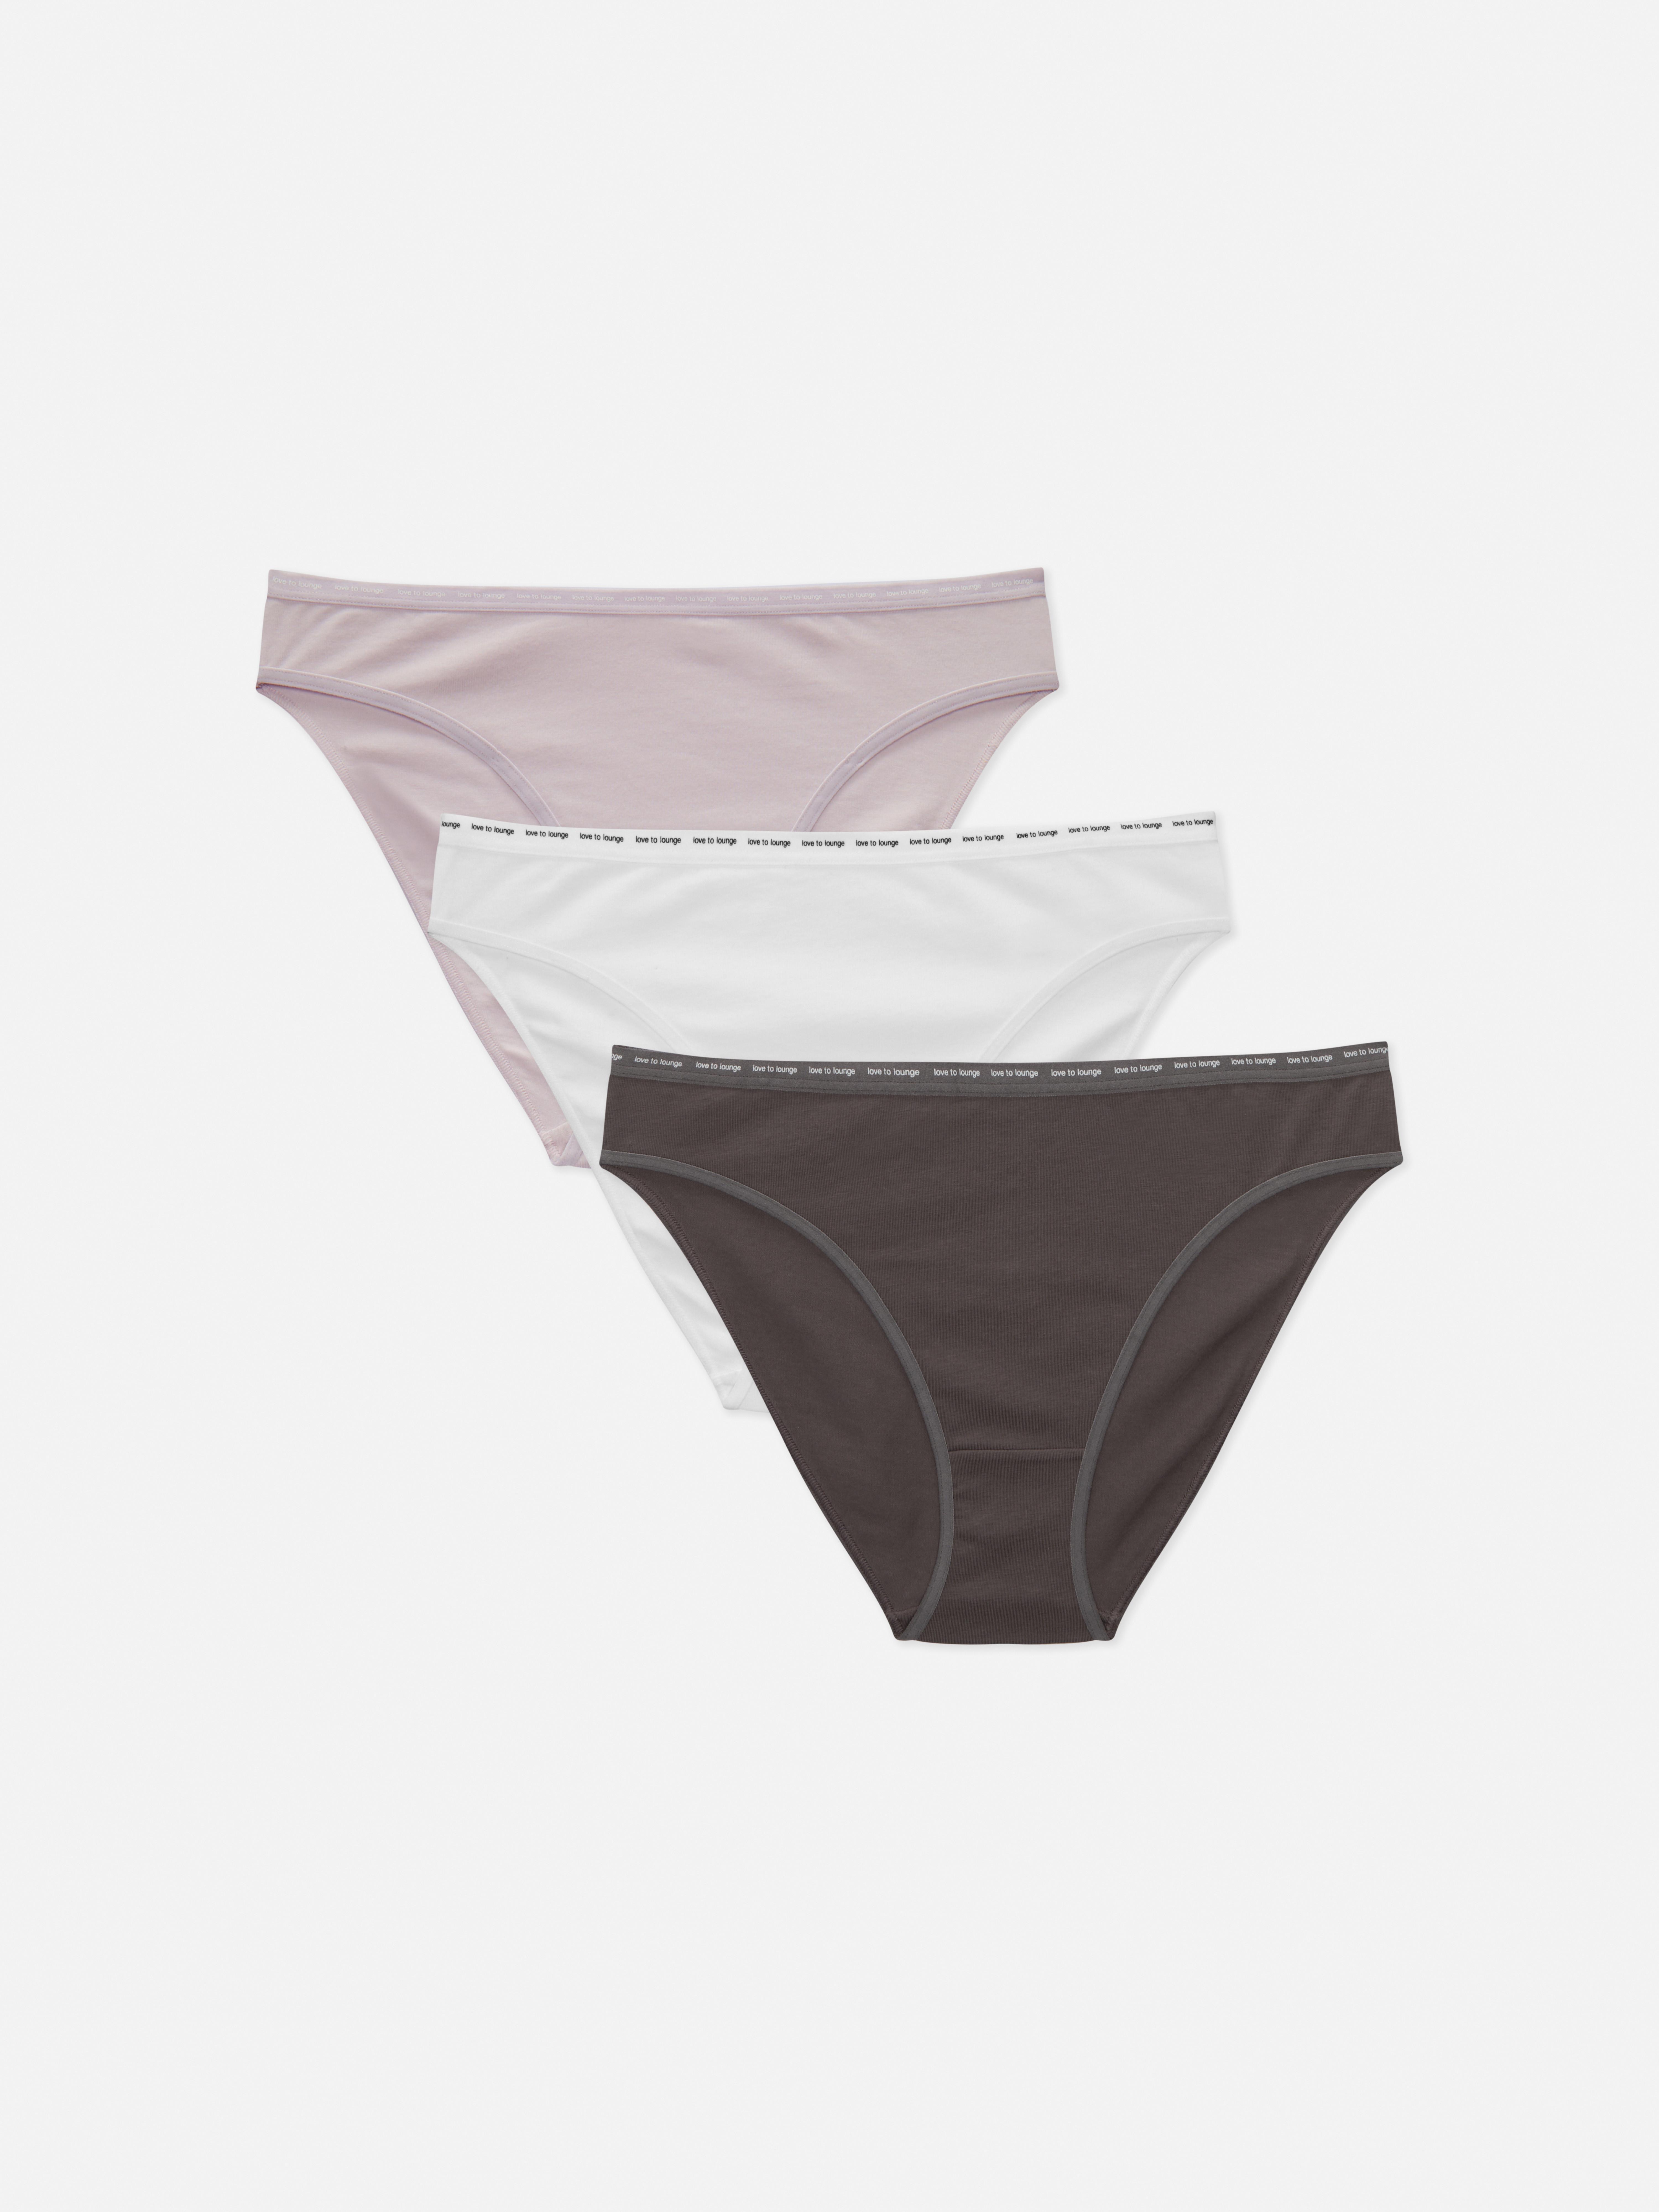 Primark on X: It's a comfy underwear kinda day 💕Bras £2/€3 each, Briefs  £5/€7 each #Primark #lingerie  / X